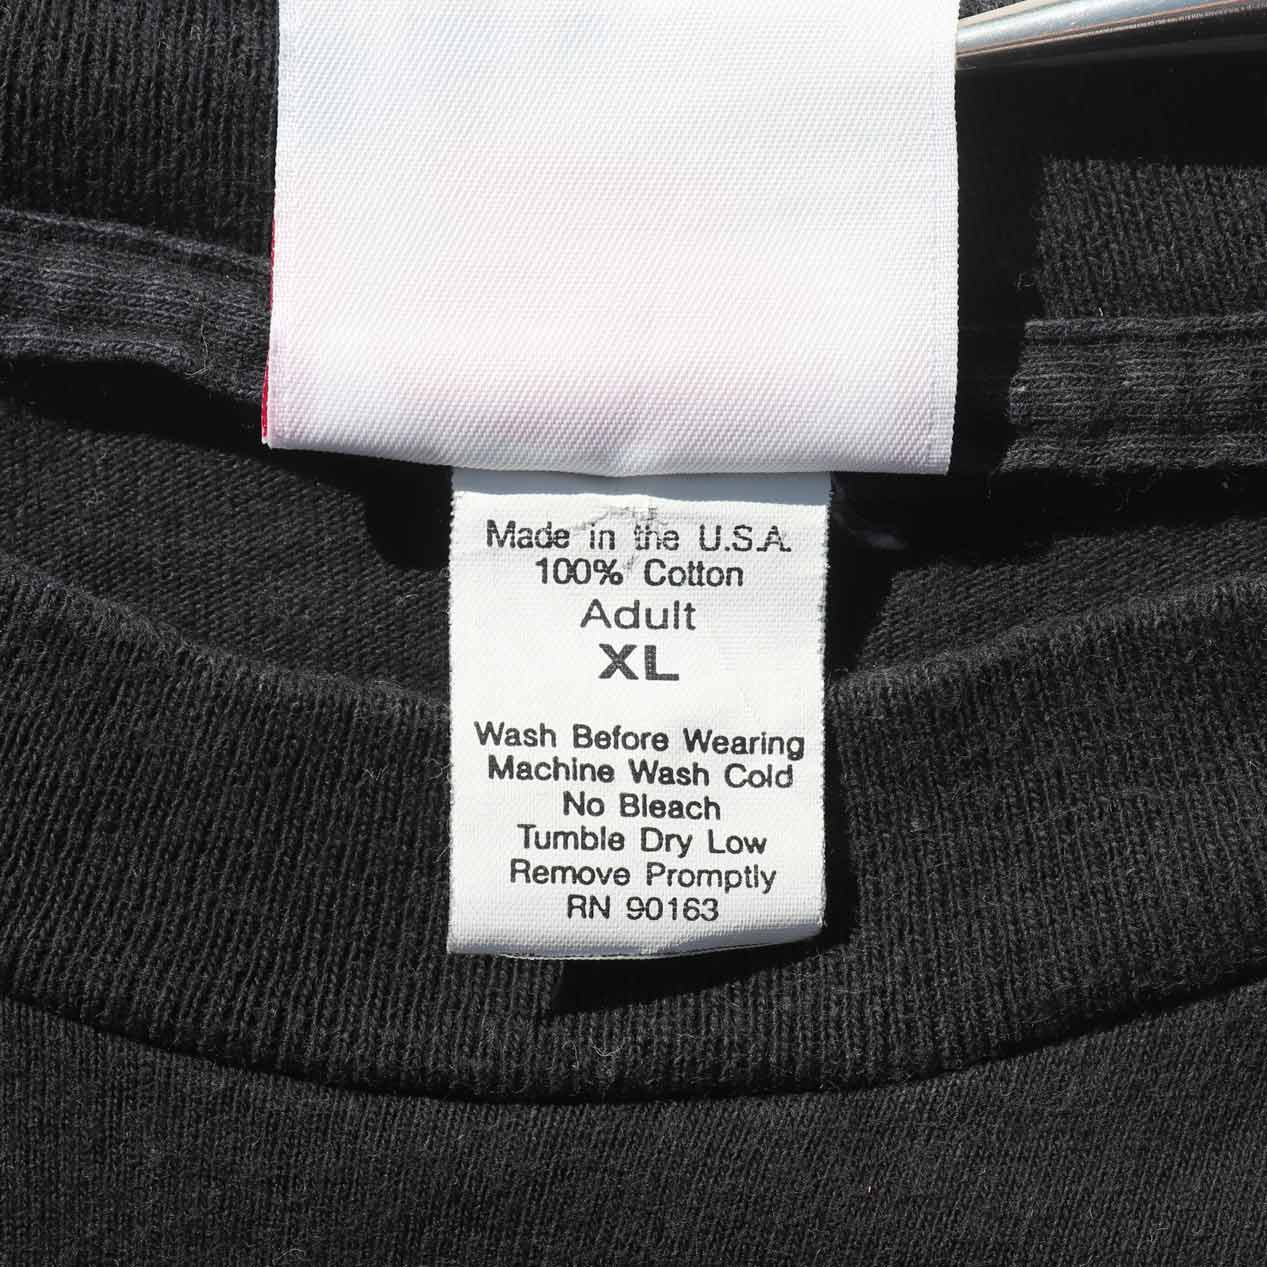 POST JUNK / 90's MARLBORO “LIZARD” Pocket T-Shirt Made In U.S.A. [XL]